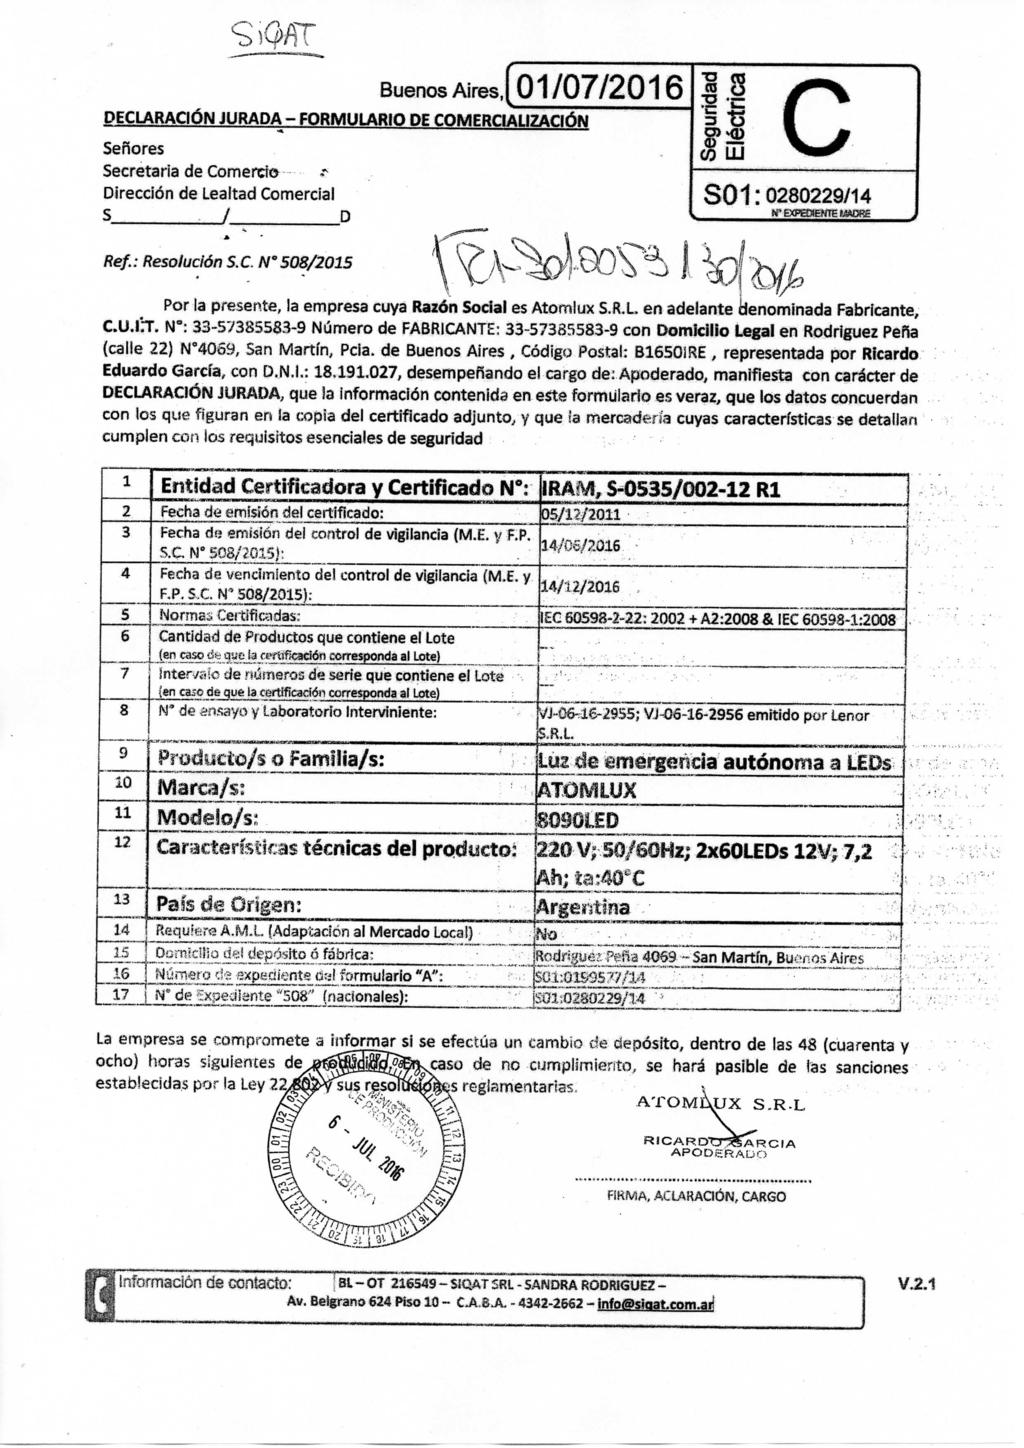 Buenos Aires, 01/07/2016.8 DECLARACIÓN JURADA - FORMULARIO DE COMERCIAUZACIÓN Señores Secretaria de Comercio Dirección de Lealtad Comercial S /_ D ^ 3 O) C S01:0280229/14 Ref.: Resolución S. C. N' 508/2015 K ^, A >?